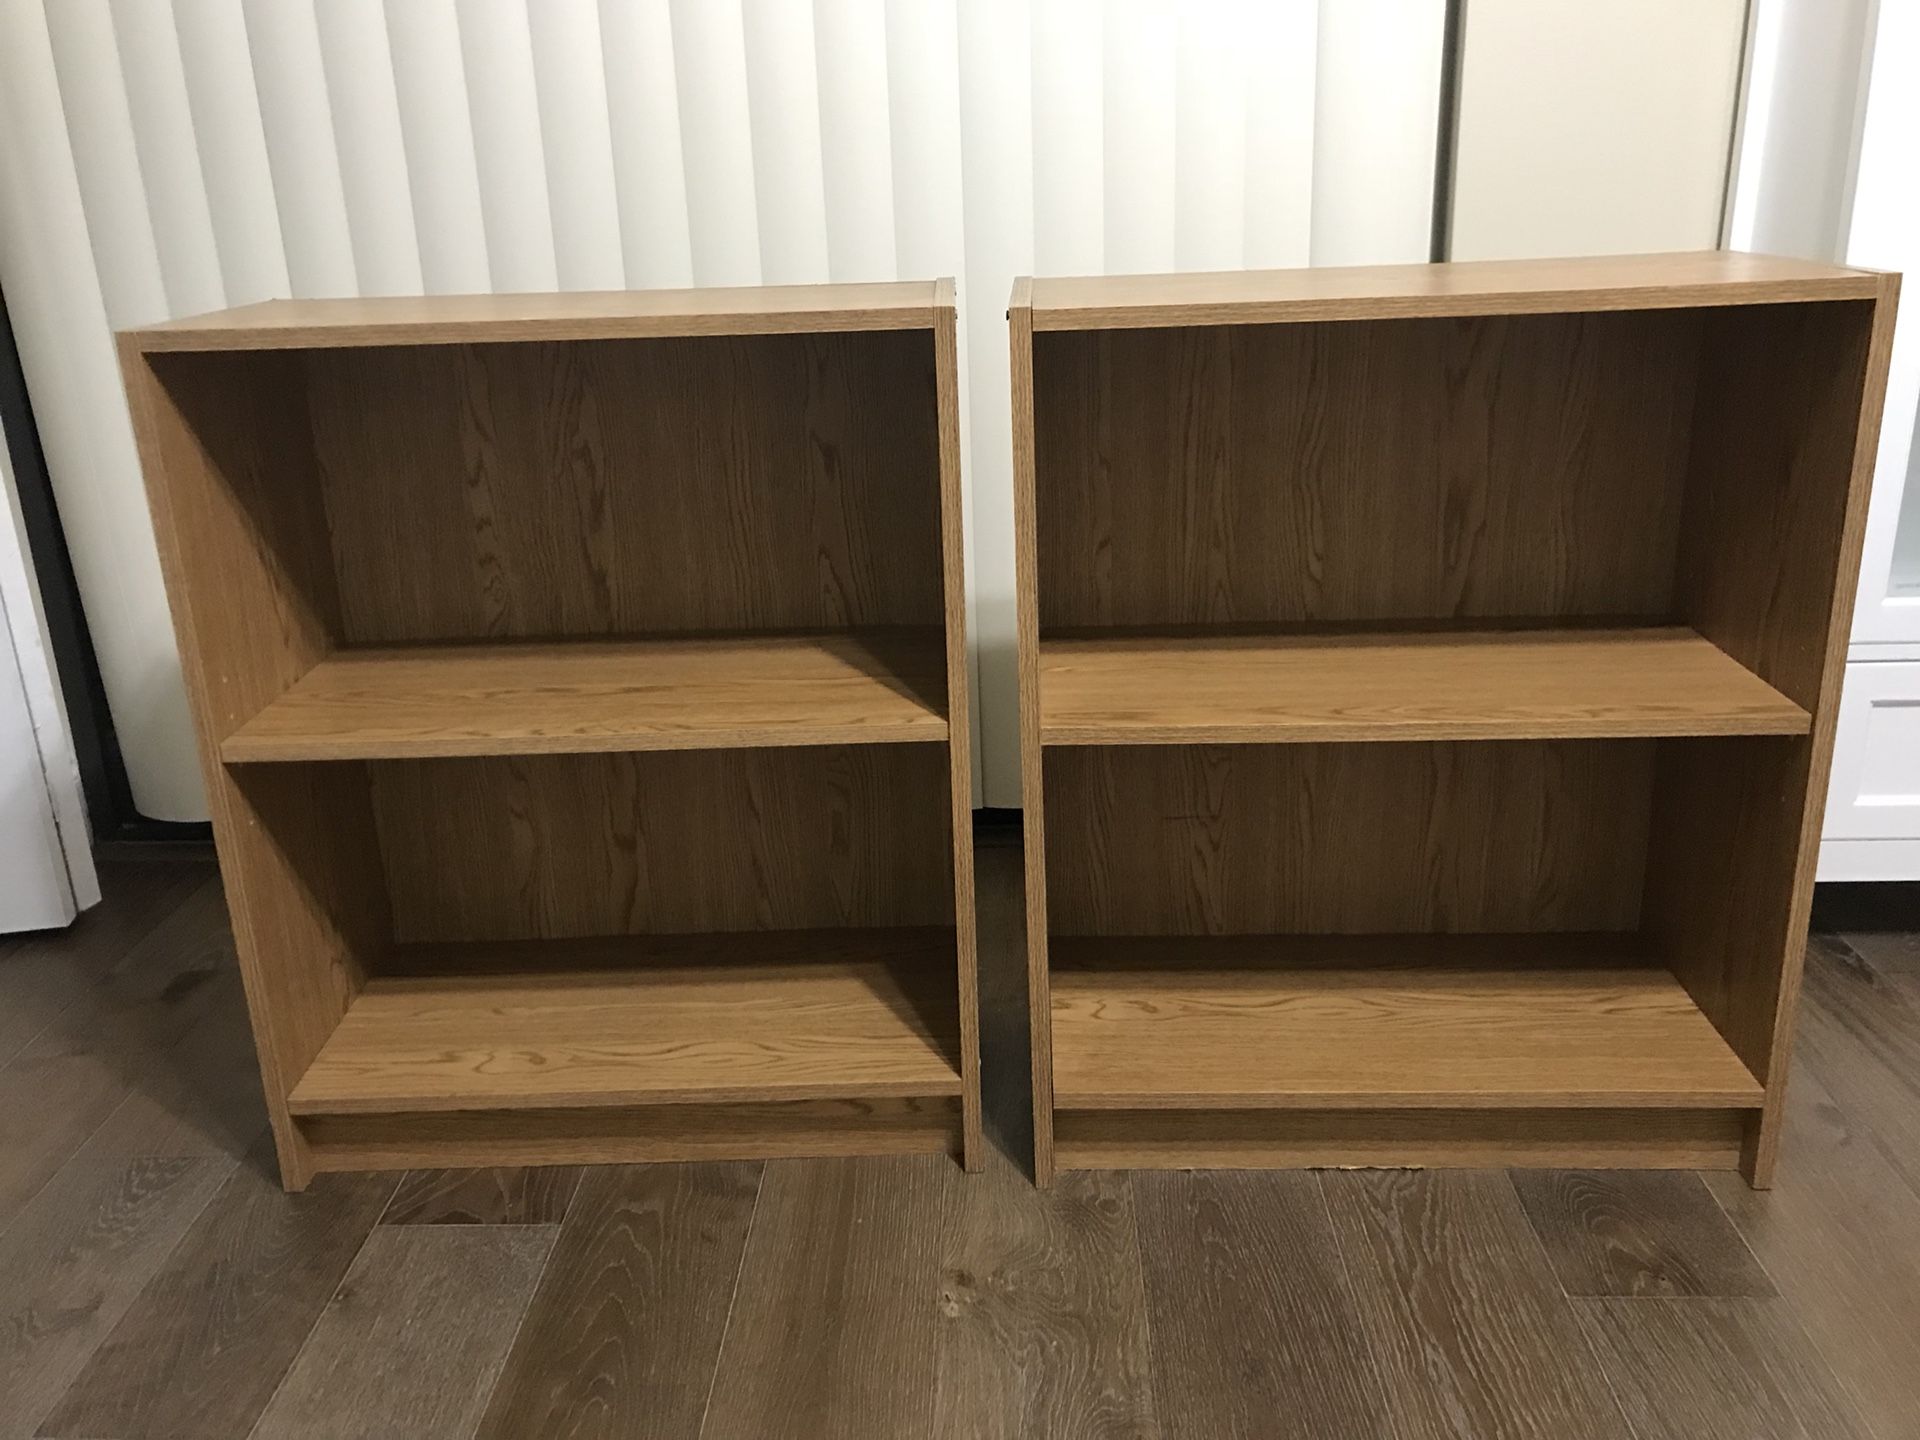 Two Bookshelves